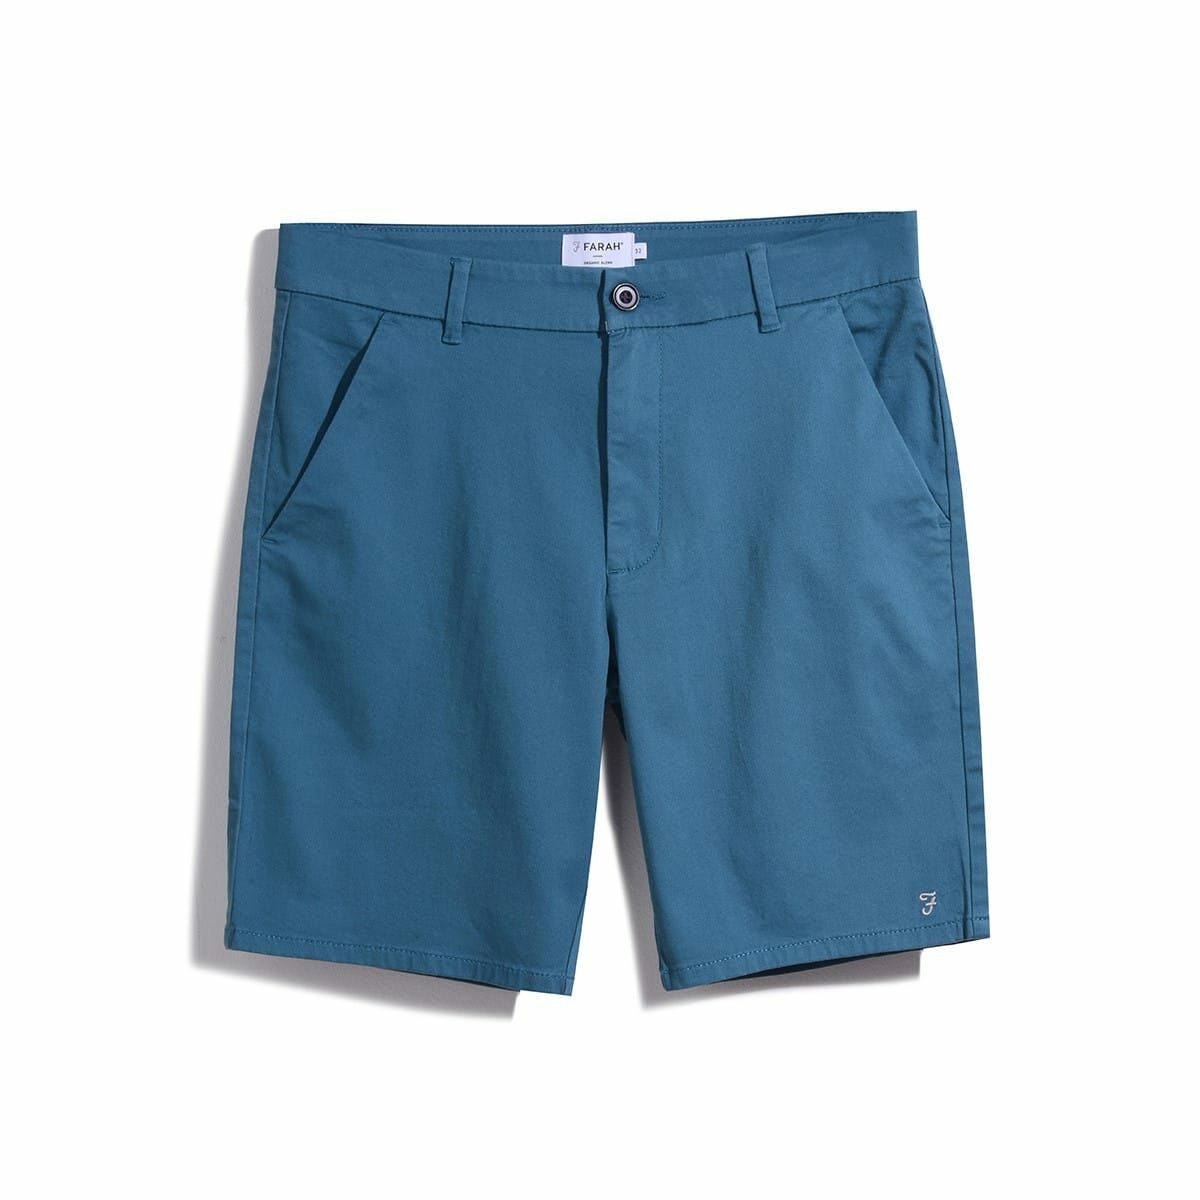 Chino Shorts – Teal